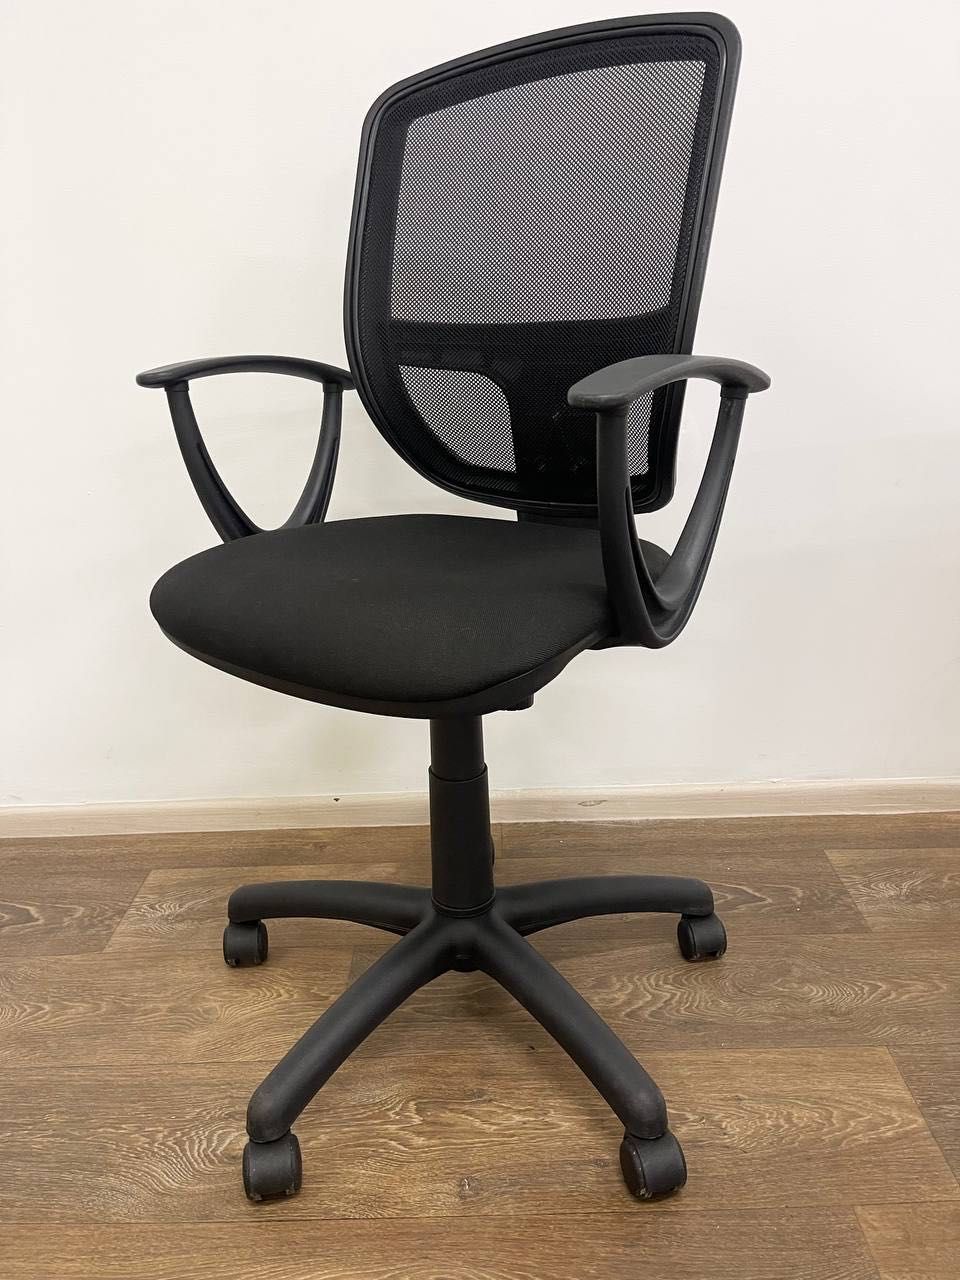 ЛІКВІДАЦІЯ складу офісної меблі стільці крісла стулья кресла